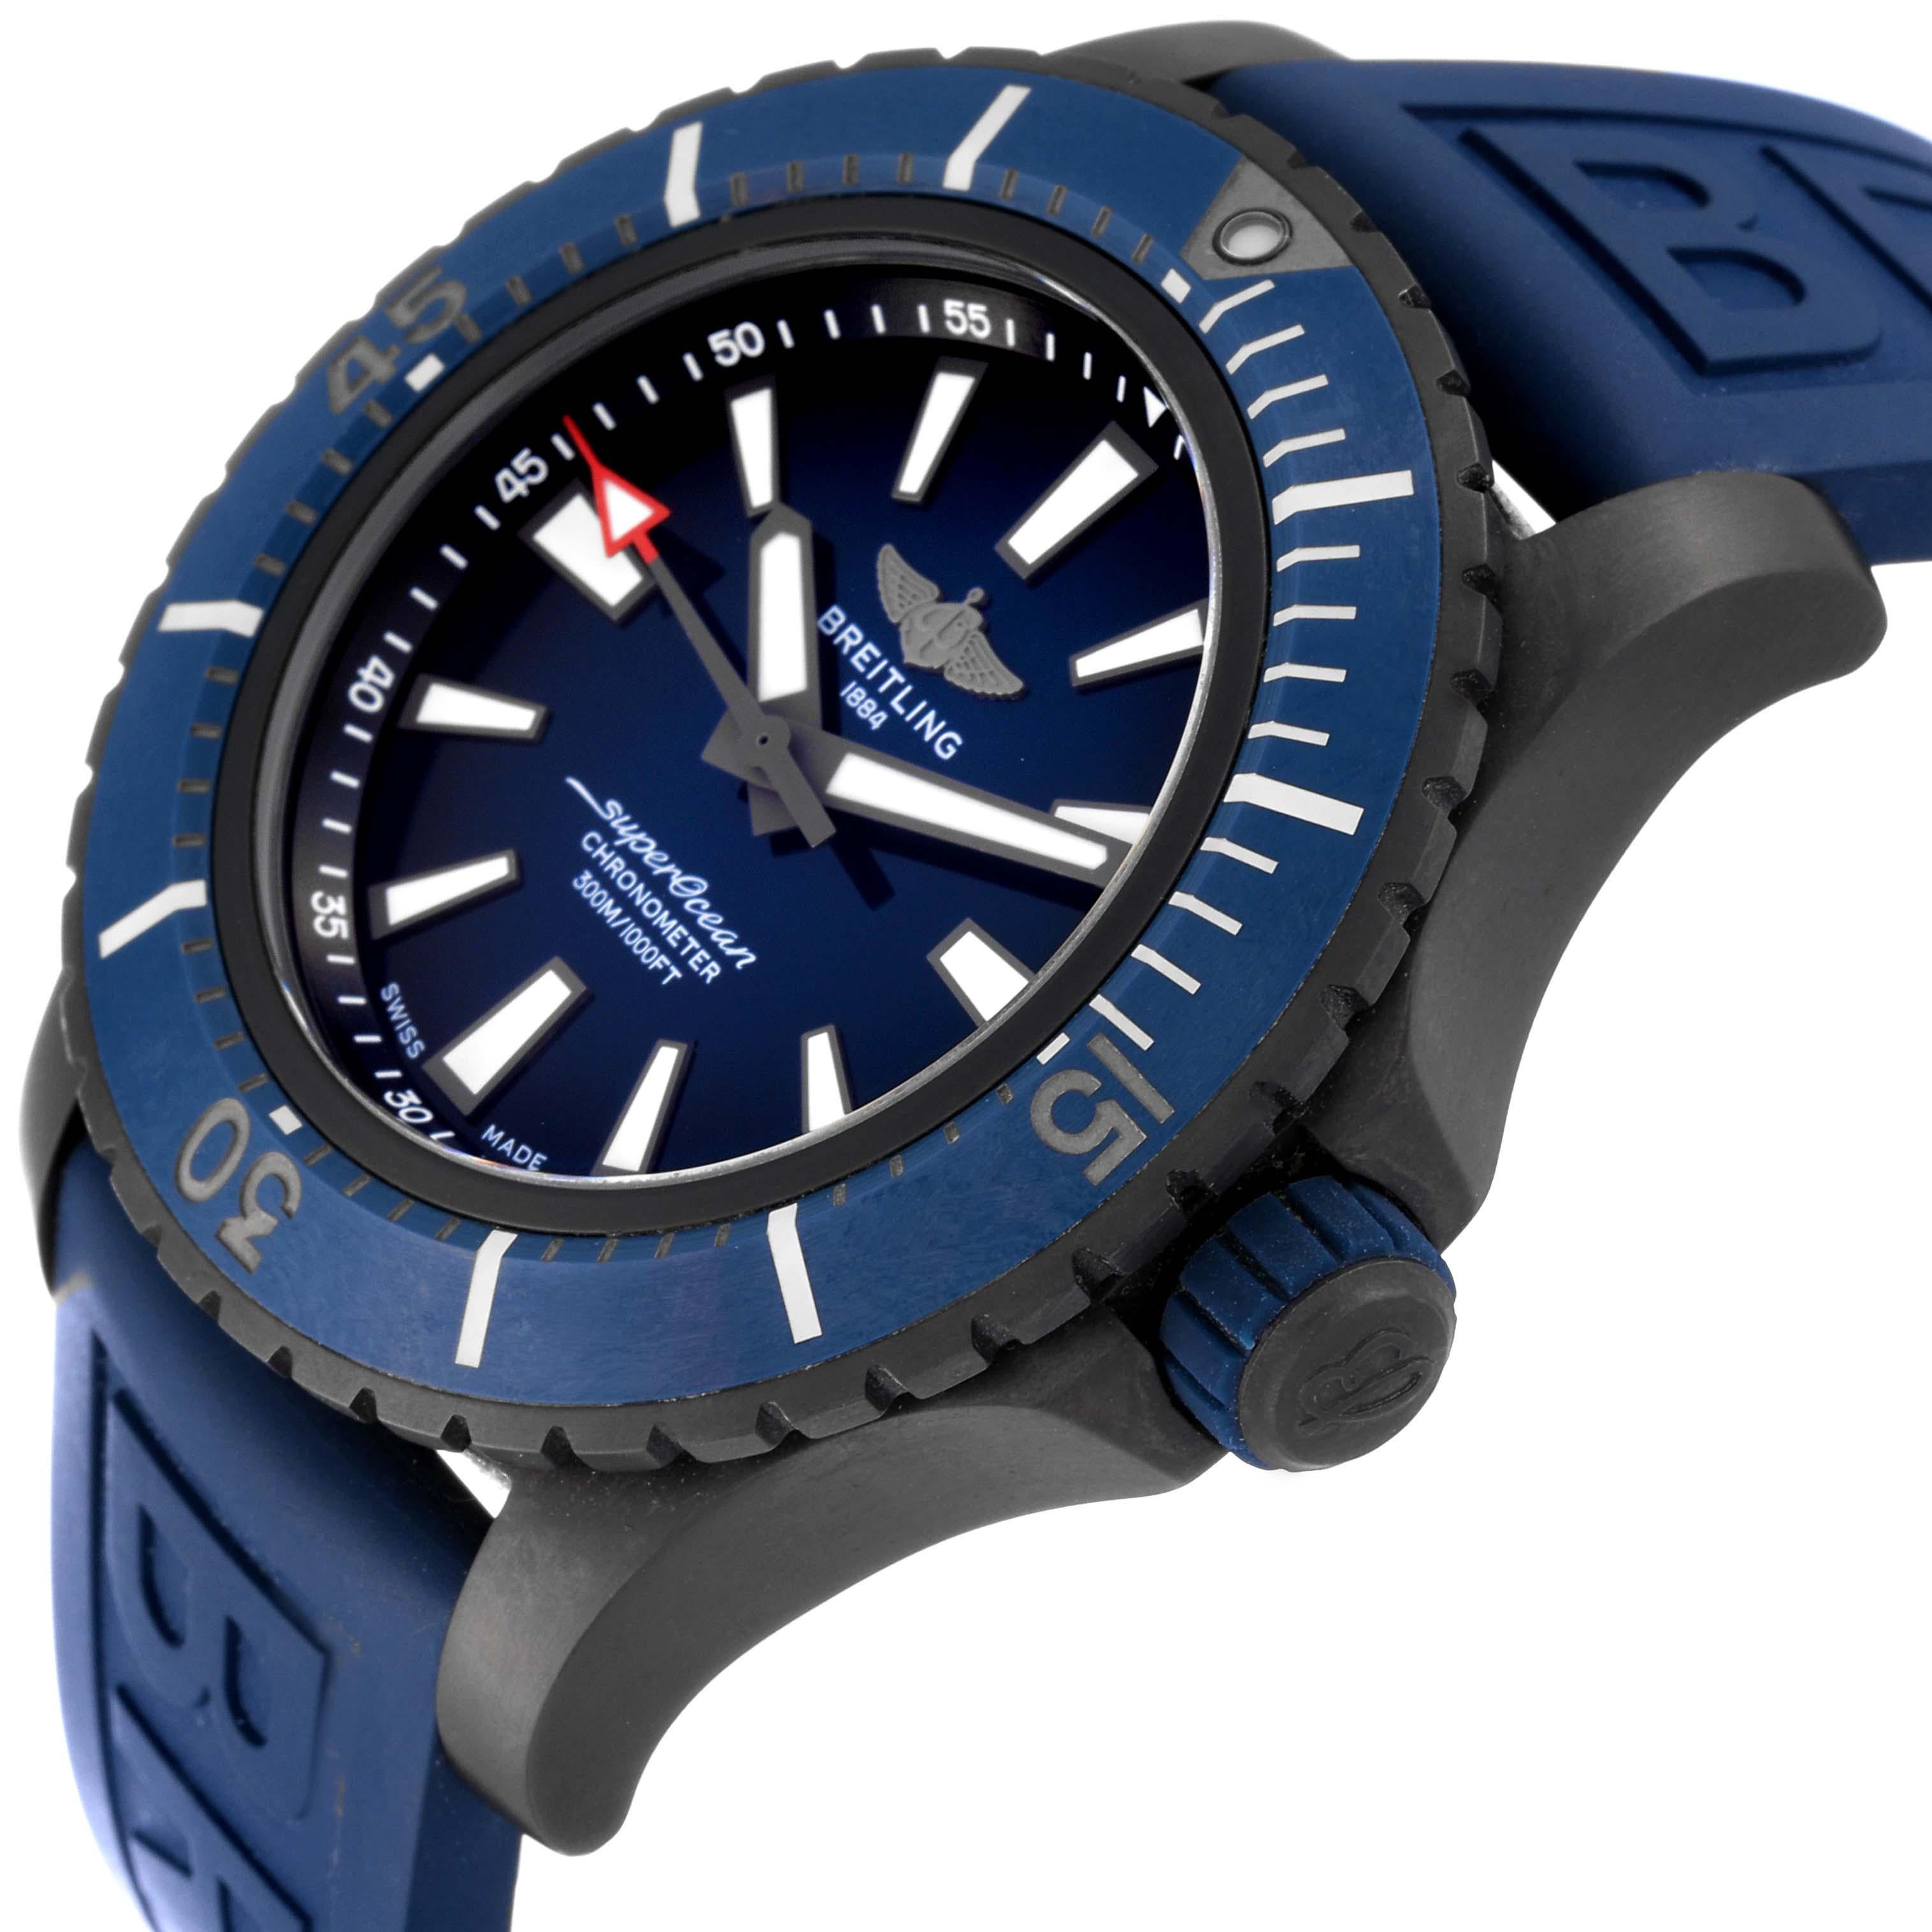 Breitling Superocean 48 blaues Zifferblatt Titanium Herrenuhr V17369 Box Card. Automatisches Uhrwerk mit Selbstaufzug. DLC-beschichtetes Titangehäuse mit einem Durchmesser von 48,0 mm. Gummierte, verschraubte Krone. DLC-beschichtete, bidirektional